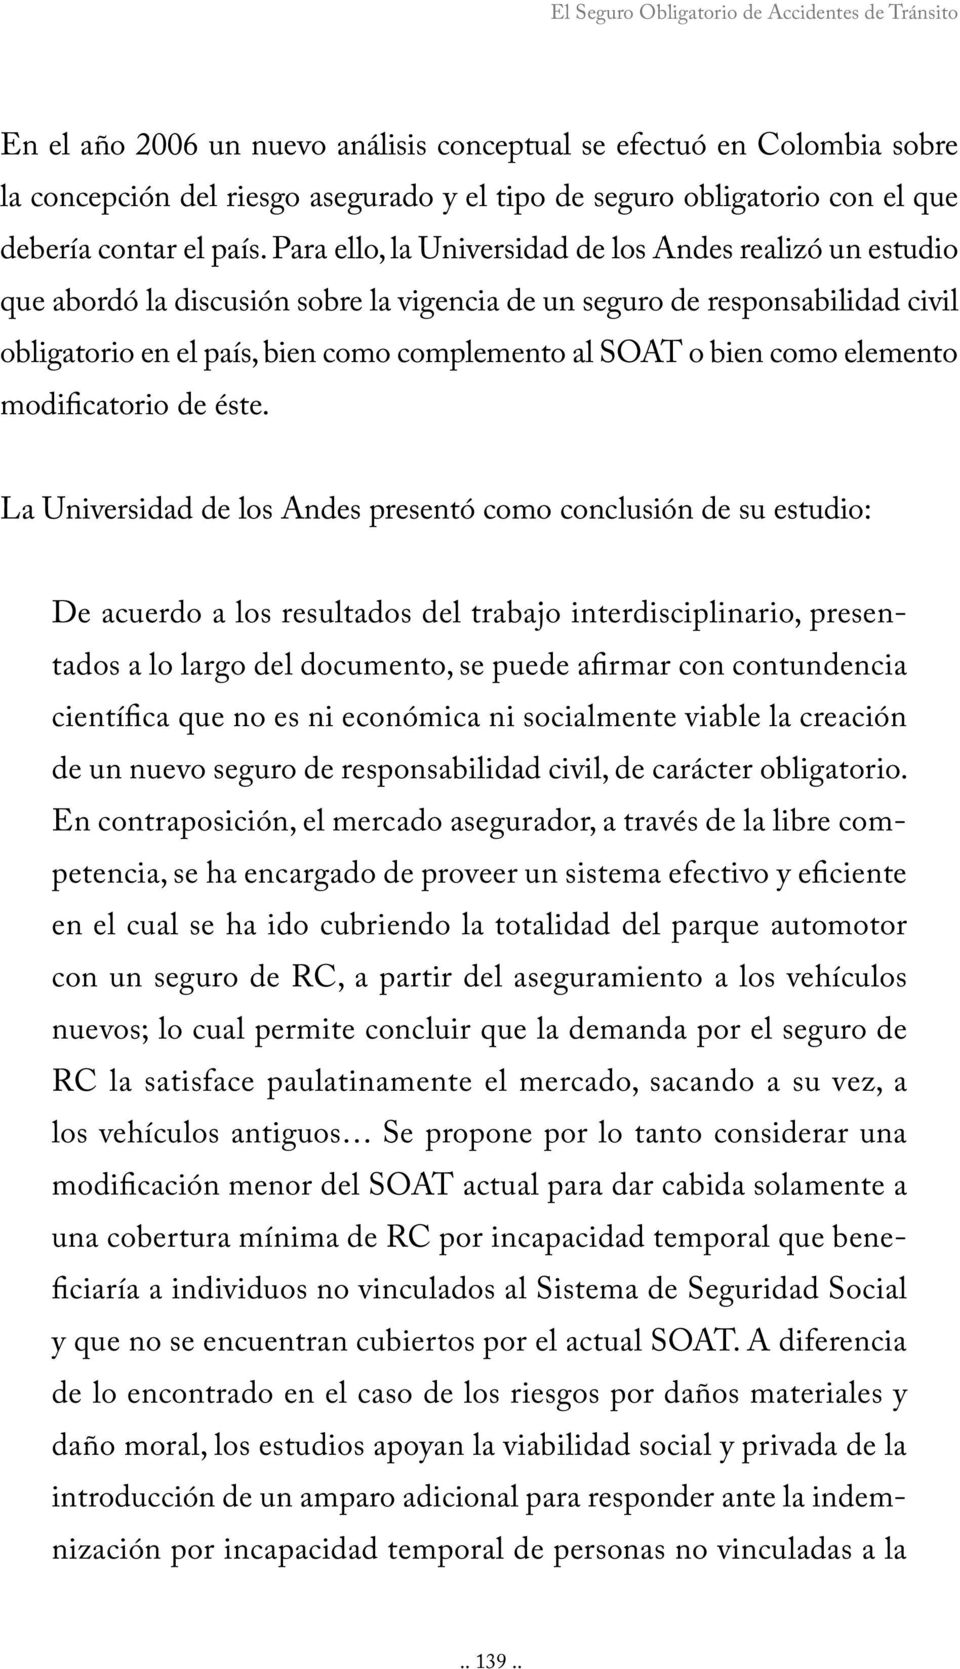 Para ello, la Universidad de los Andes realizó un estudio que abordó la discusión sobre la vigencia de un seguro de responsabilidad civil obligatorio en el país, bien como complemento al SOAT o bien